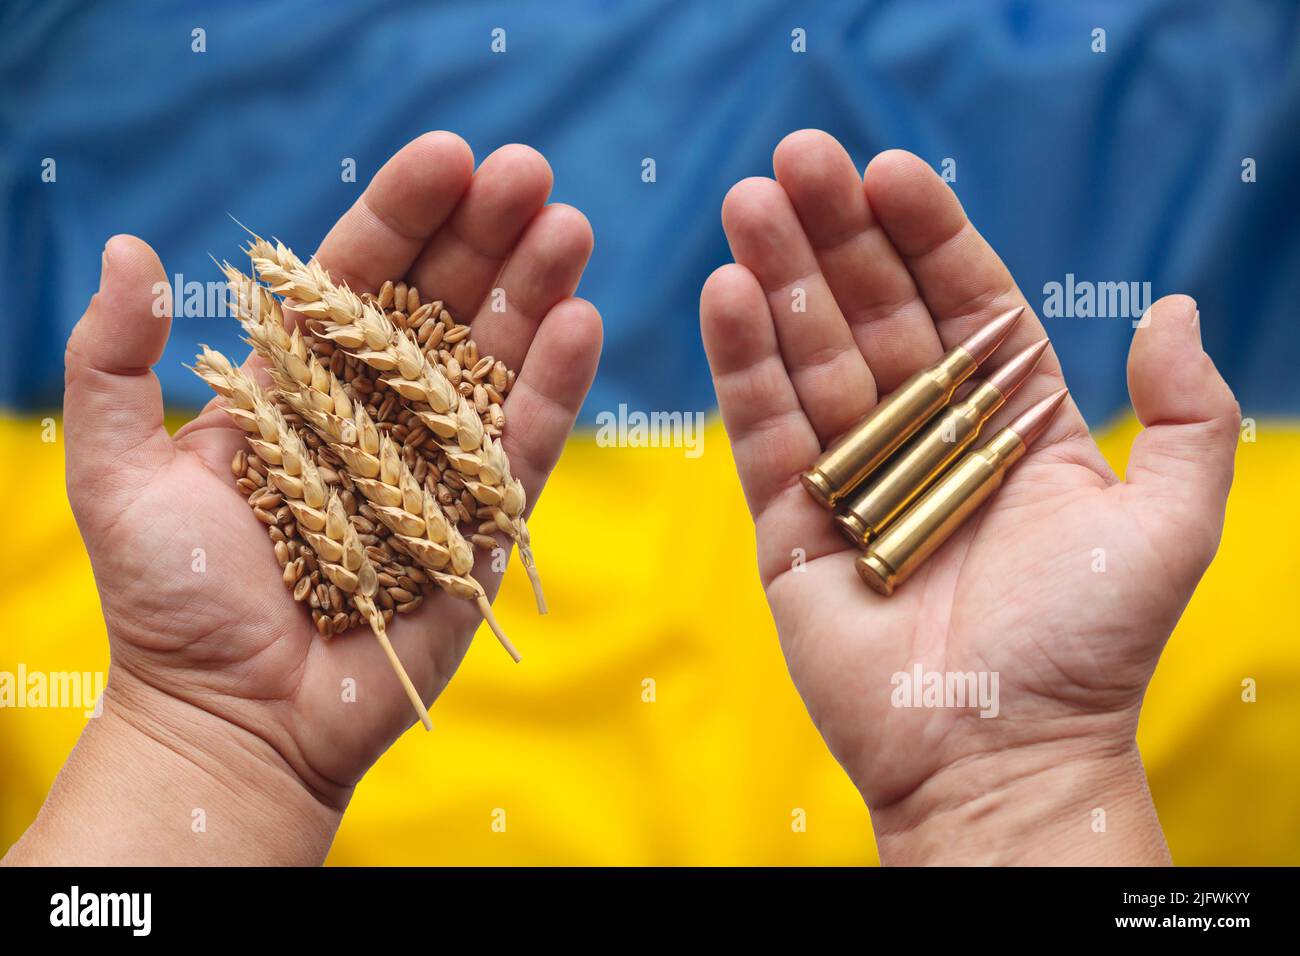 Posible crisis alimentaria causada por la guerra en Ucrania. Manos con grano de trigo y municiones, la bandera de Ucrania en el fondo. Concepto. Foto de stock